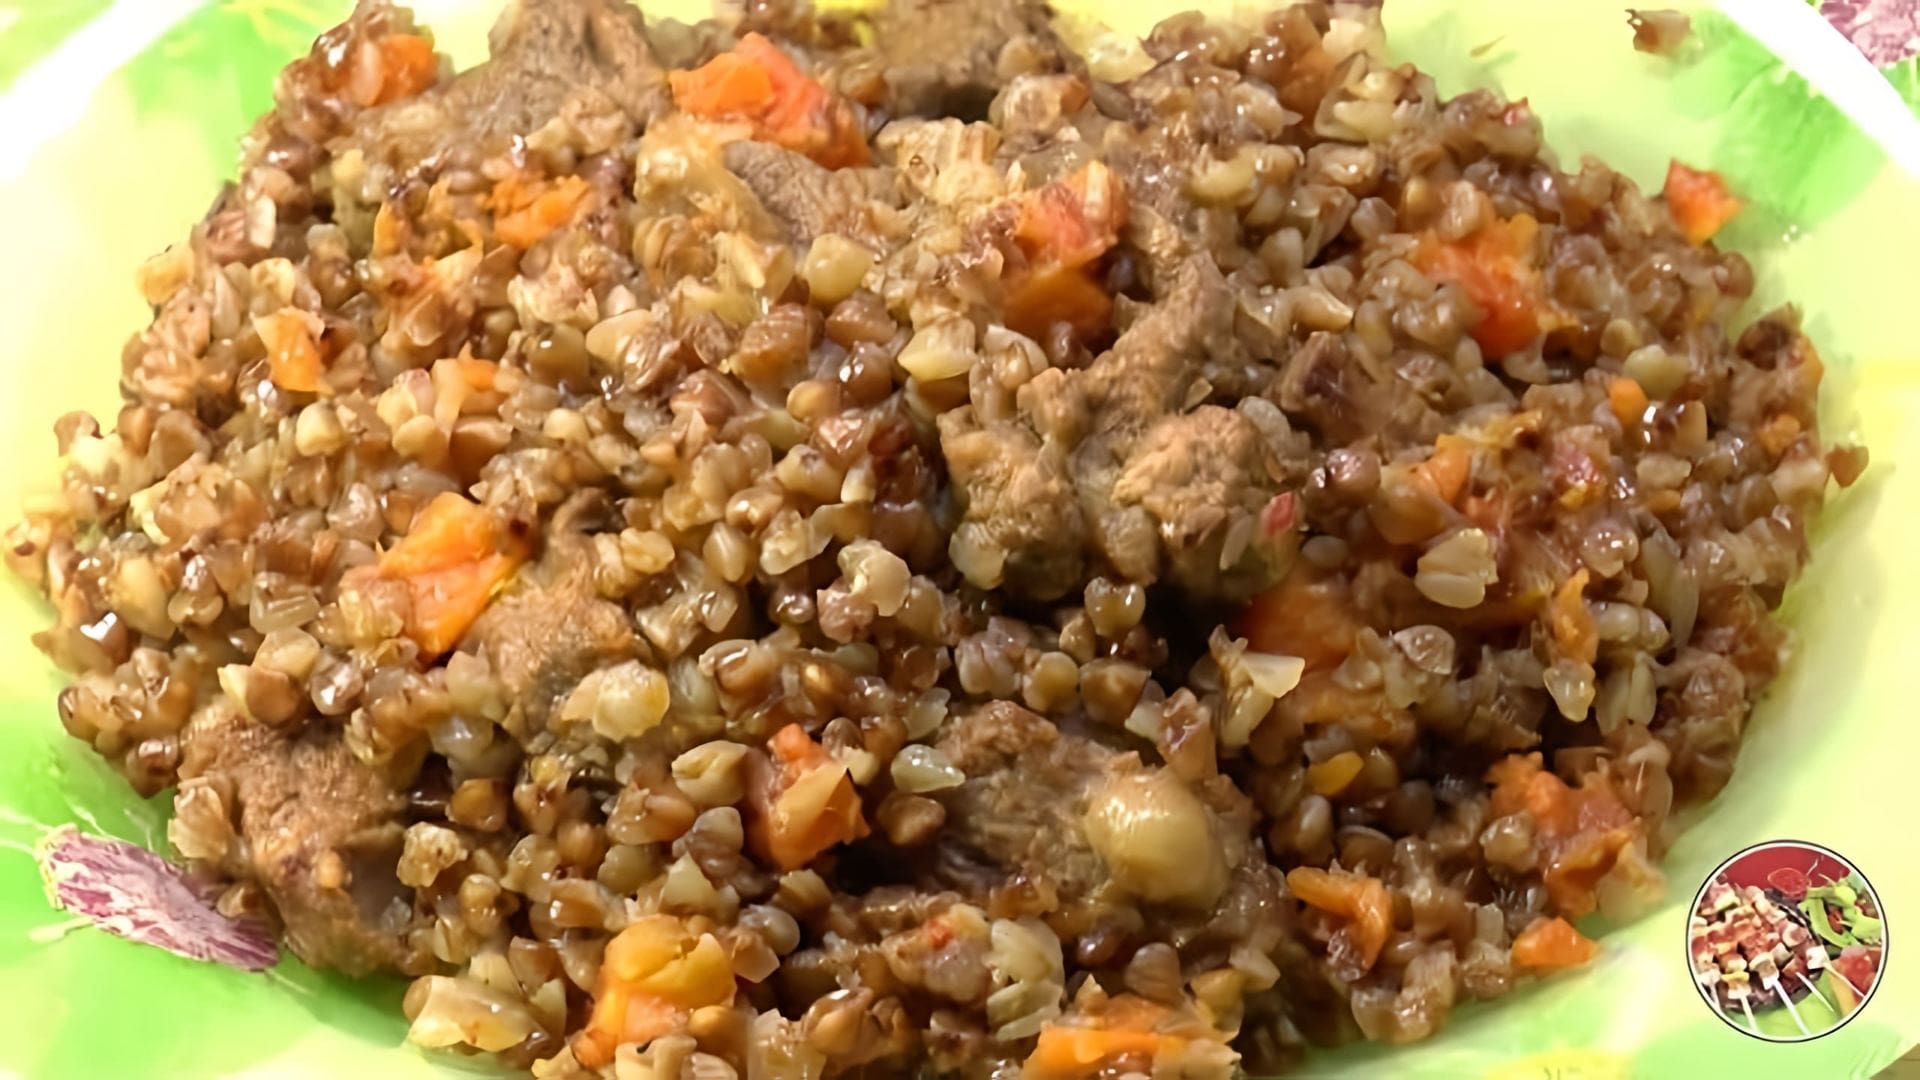 В этом видео демонстрируется процесс приготовления гречневой каши с мясом в одной кастрюле